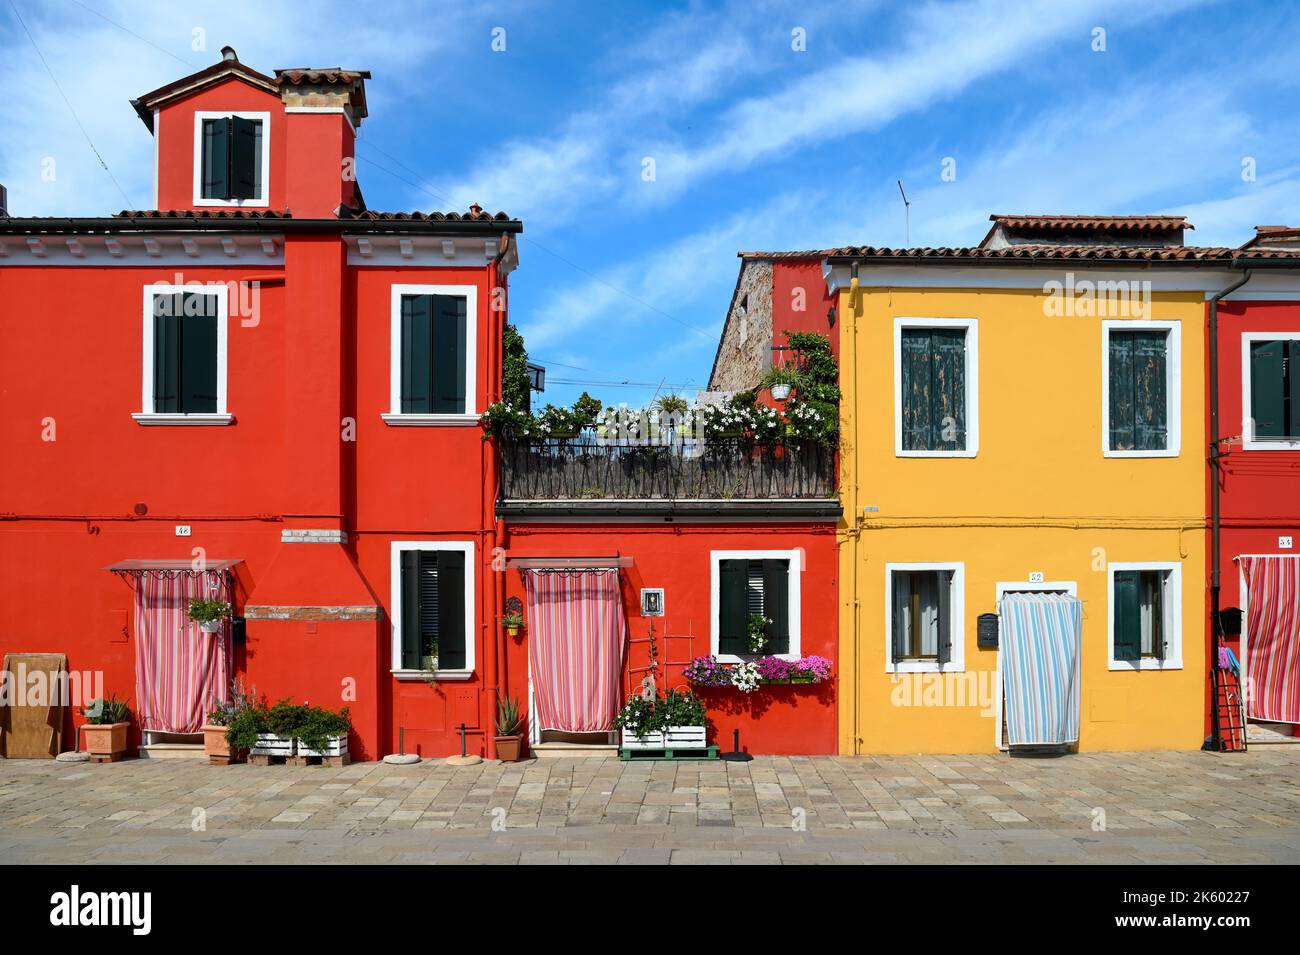 Maisons rouges et jaunes lumineuses situées contre le ciel bleu nuageux le jour ensoleillé sur la rue de l'île de Burano en Italie Banque D'Images